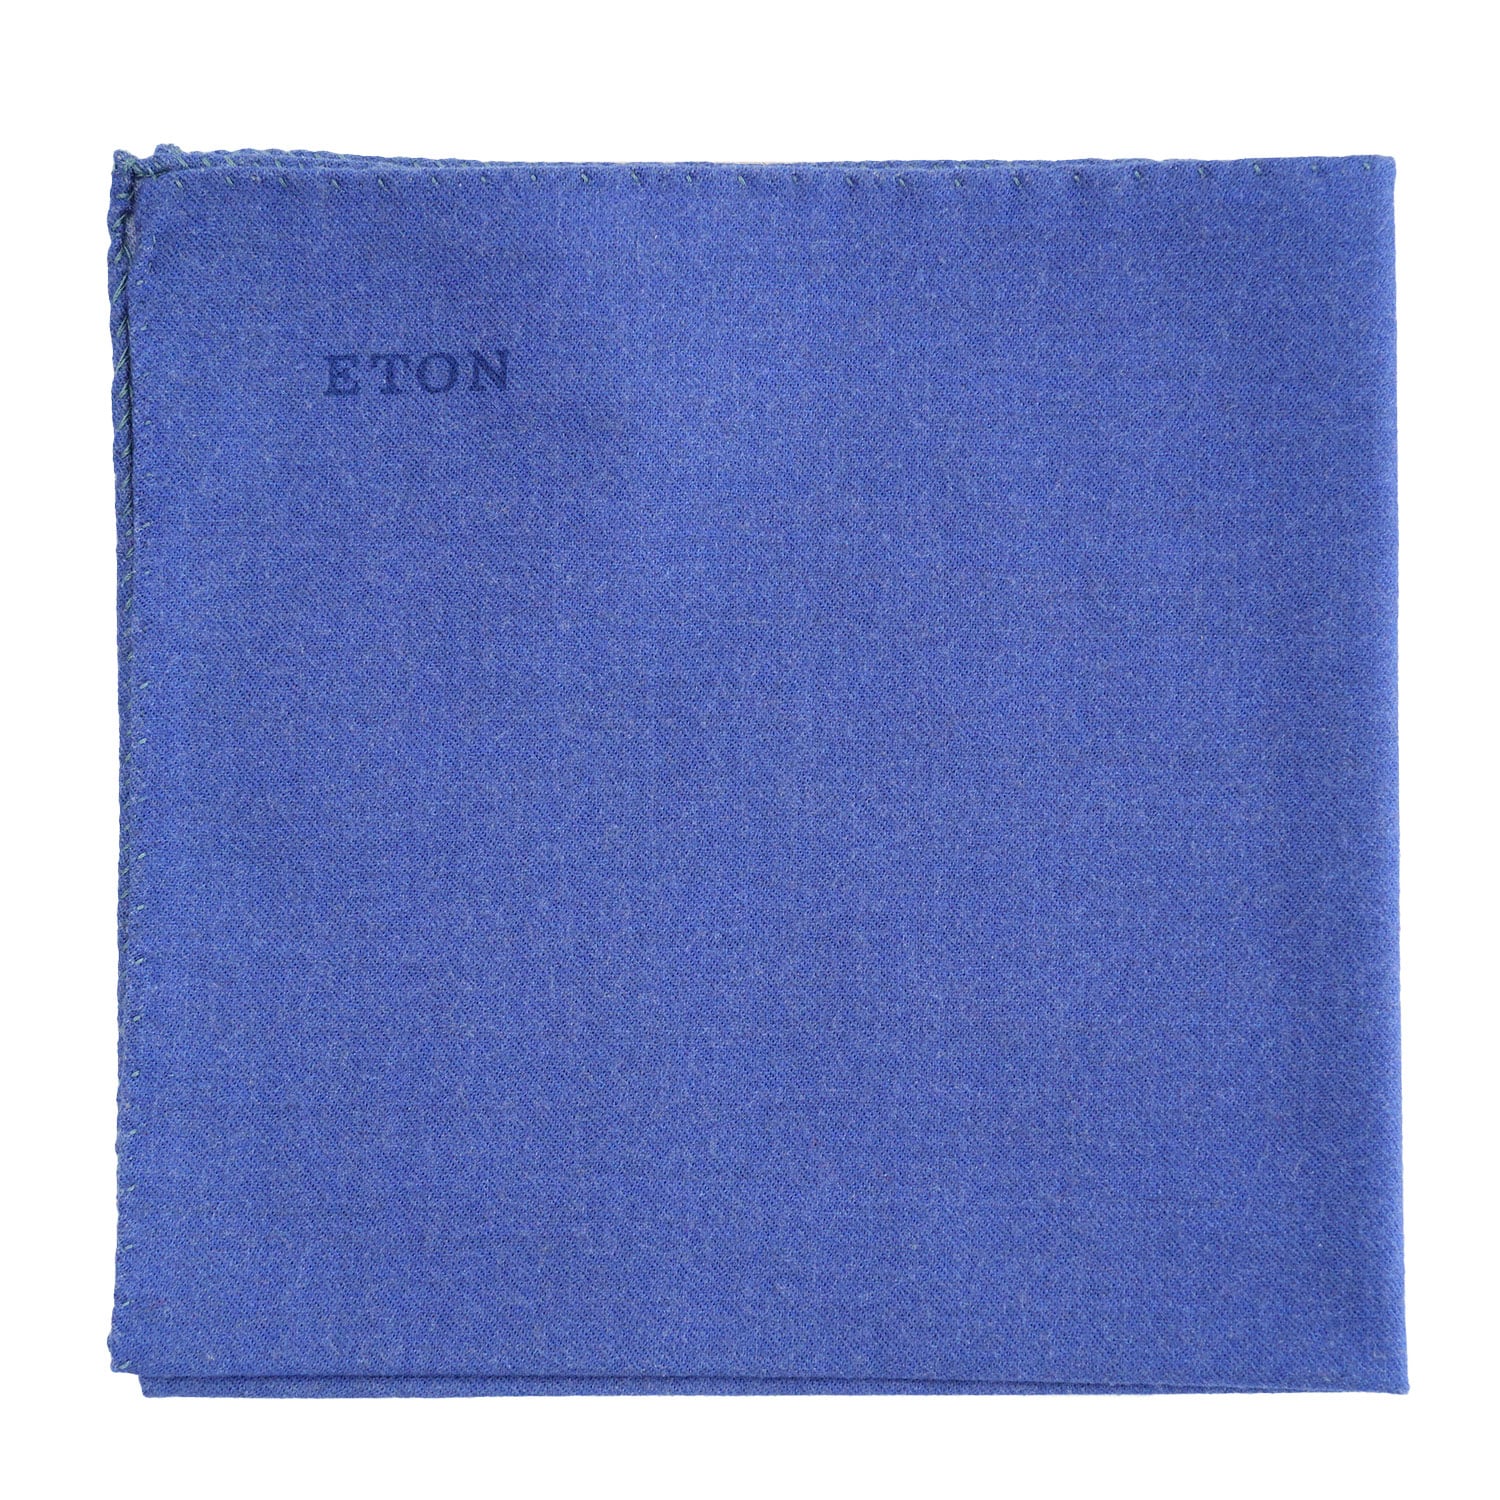 Eton blue pocket square